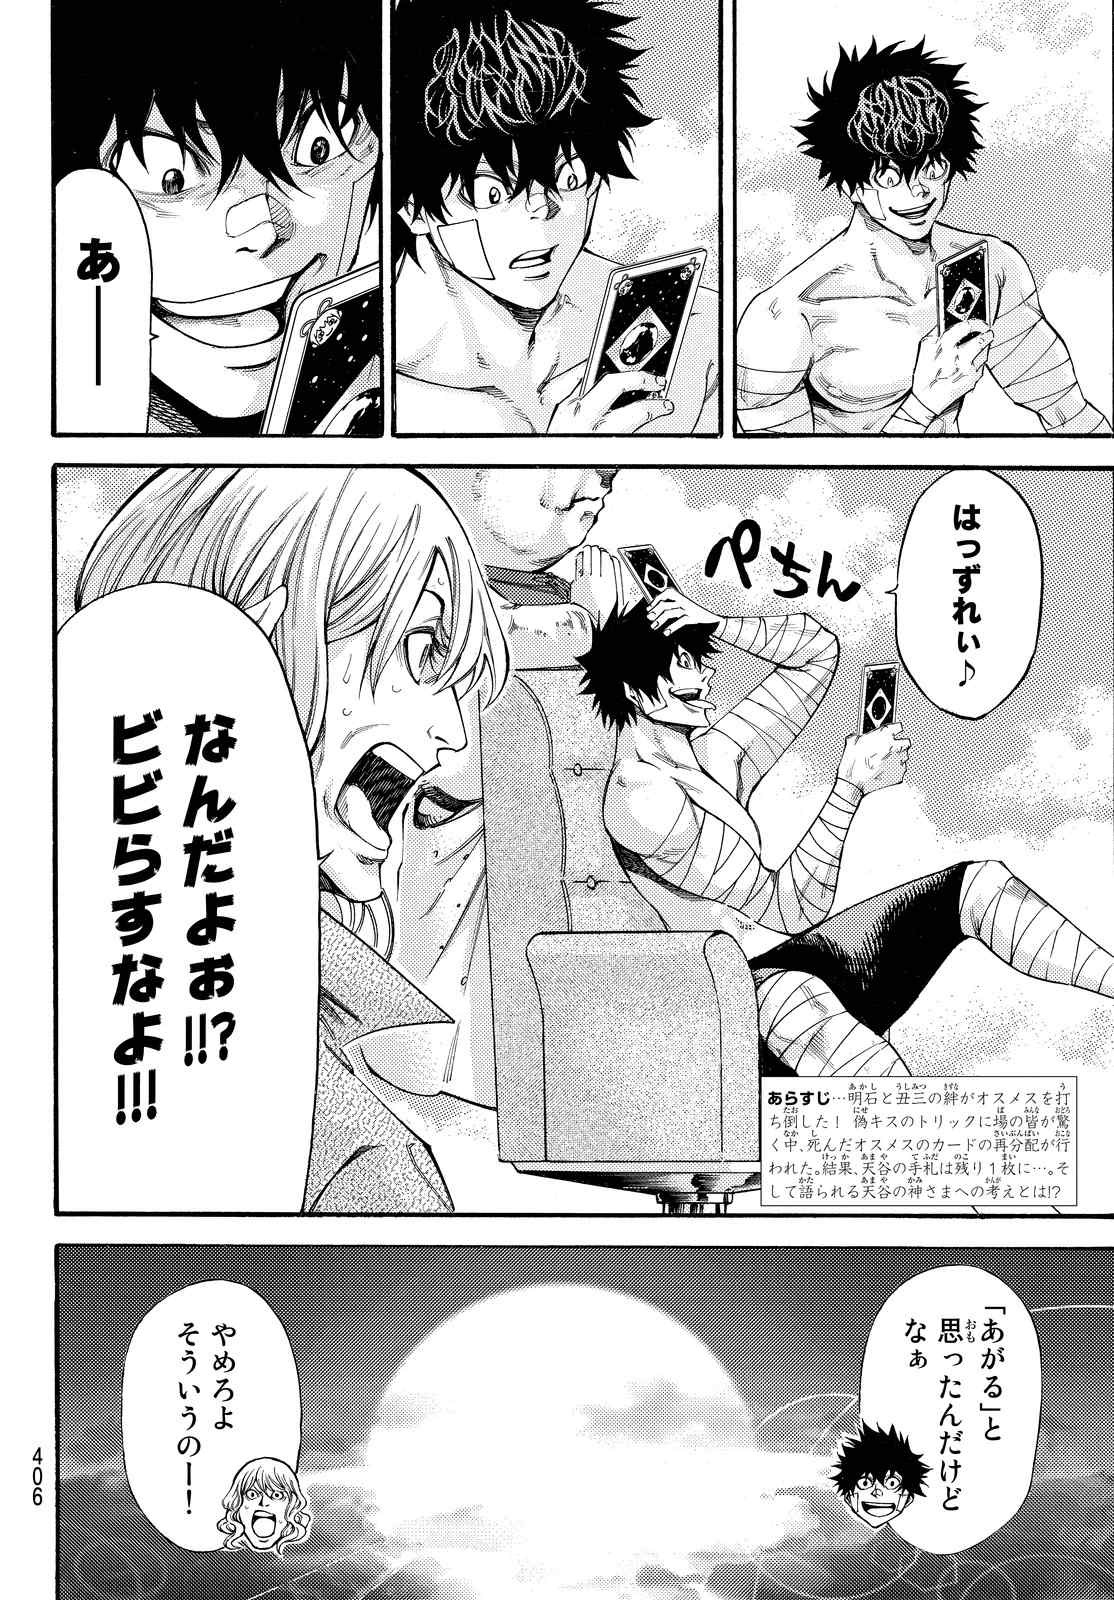 Kamisama no Ituori - Chapter 166 - Page 2